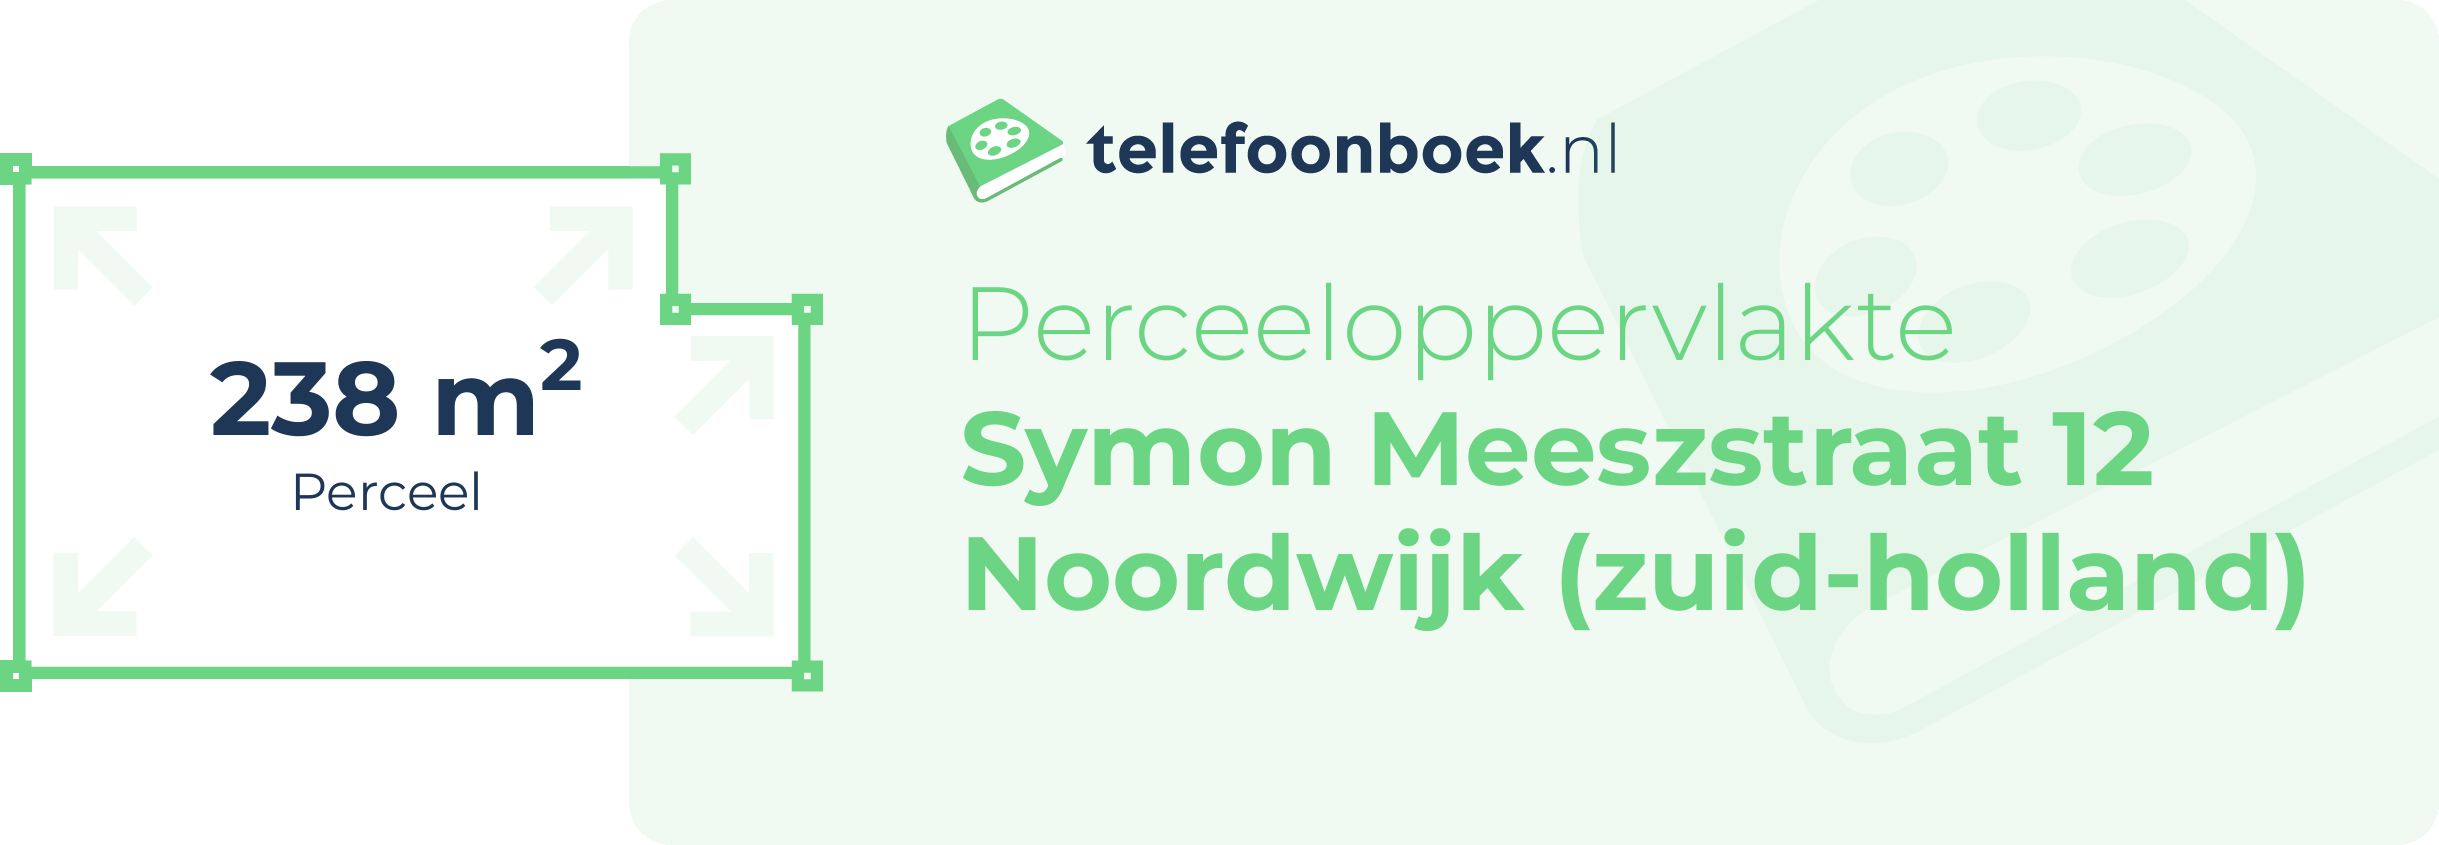 Perceeloppervlakte Symon Meeszstraat 12 Noordwijk (Zuid-Holland)